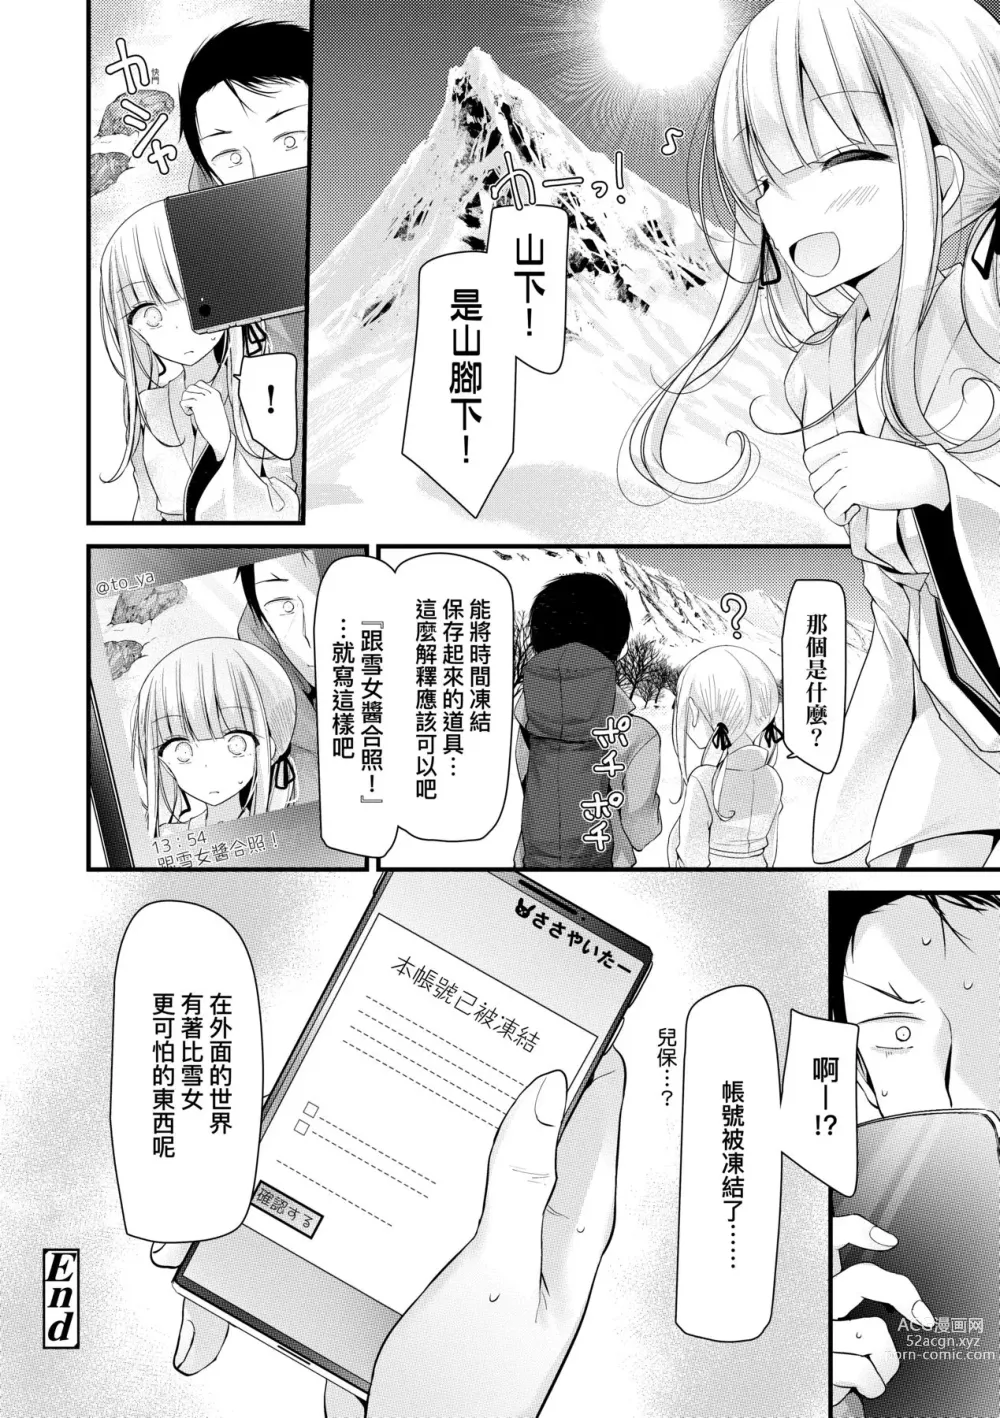 Page 25 of manga 年上的少女你也很喜歡吧? (decensored)